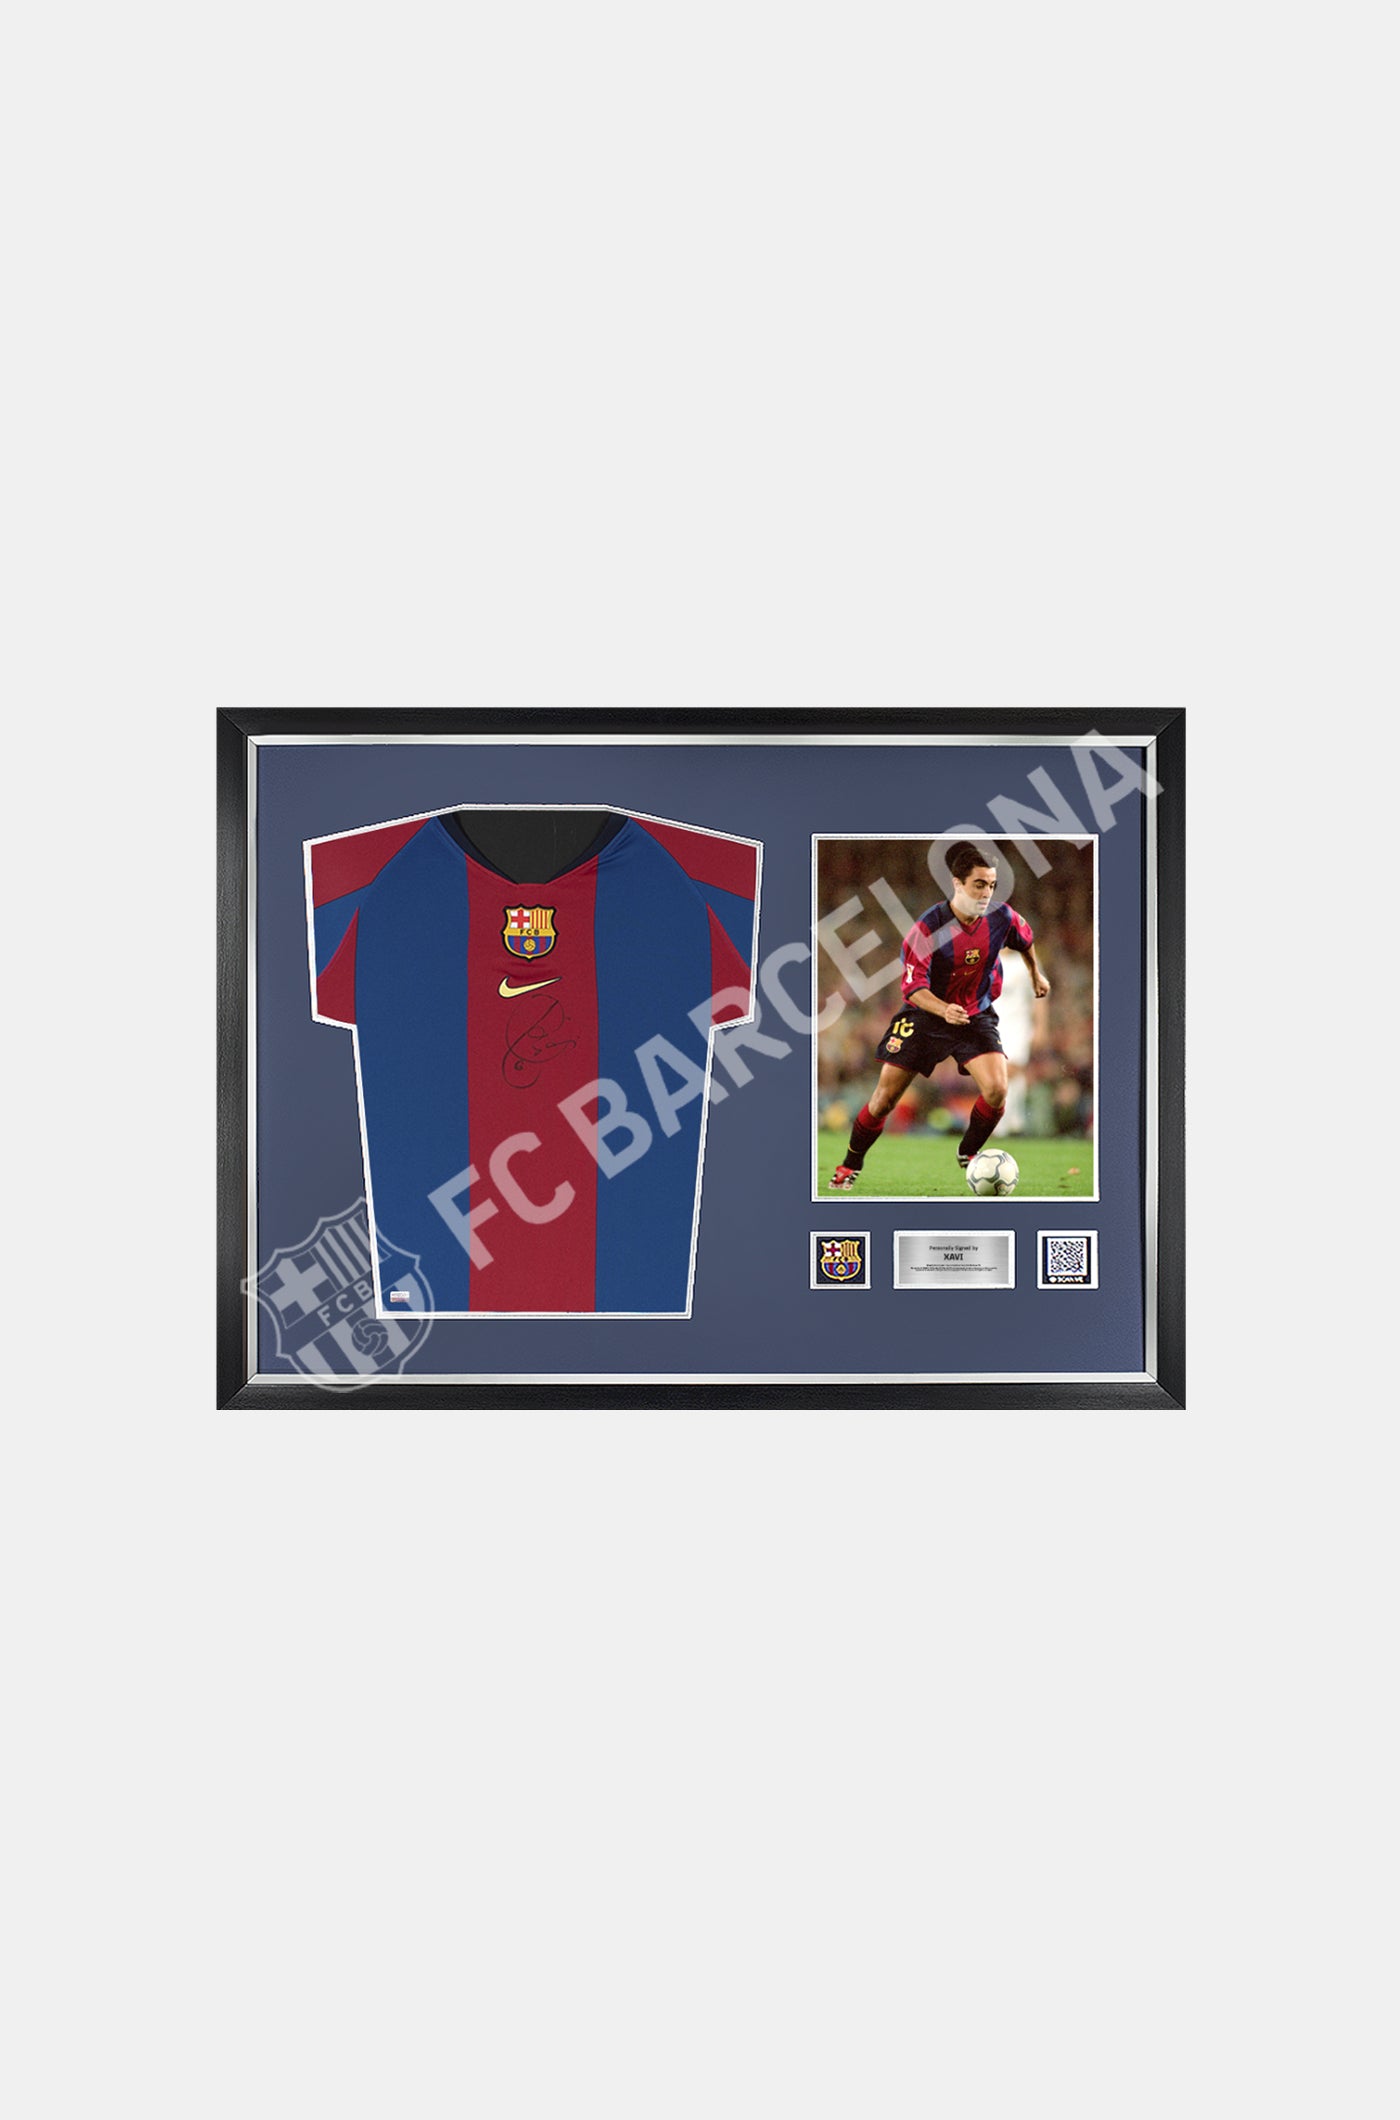 XAVI | Camiseta oficial de la 1ª equipación del FC Barcelona de la temporada 1998 firmada por Xavi